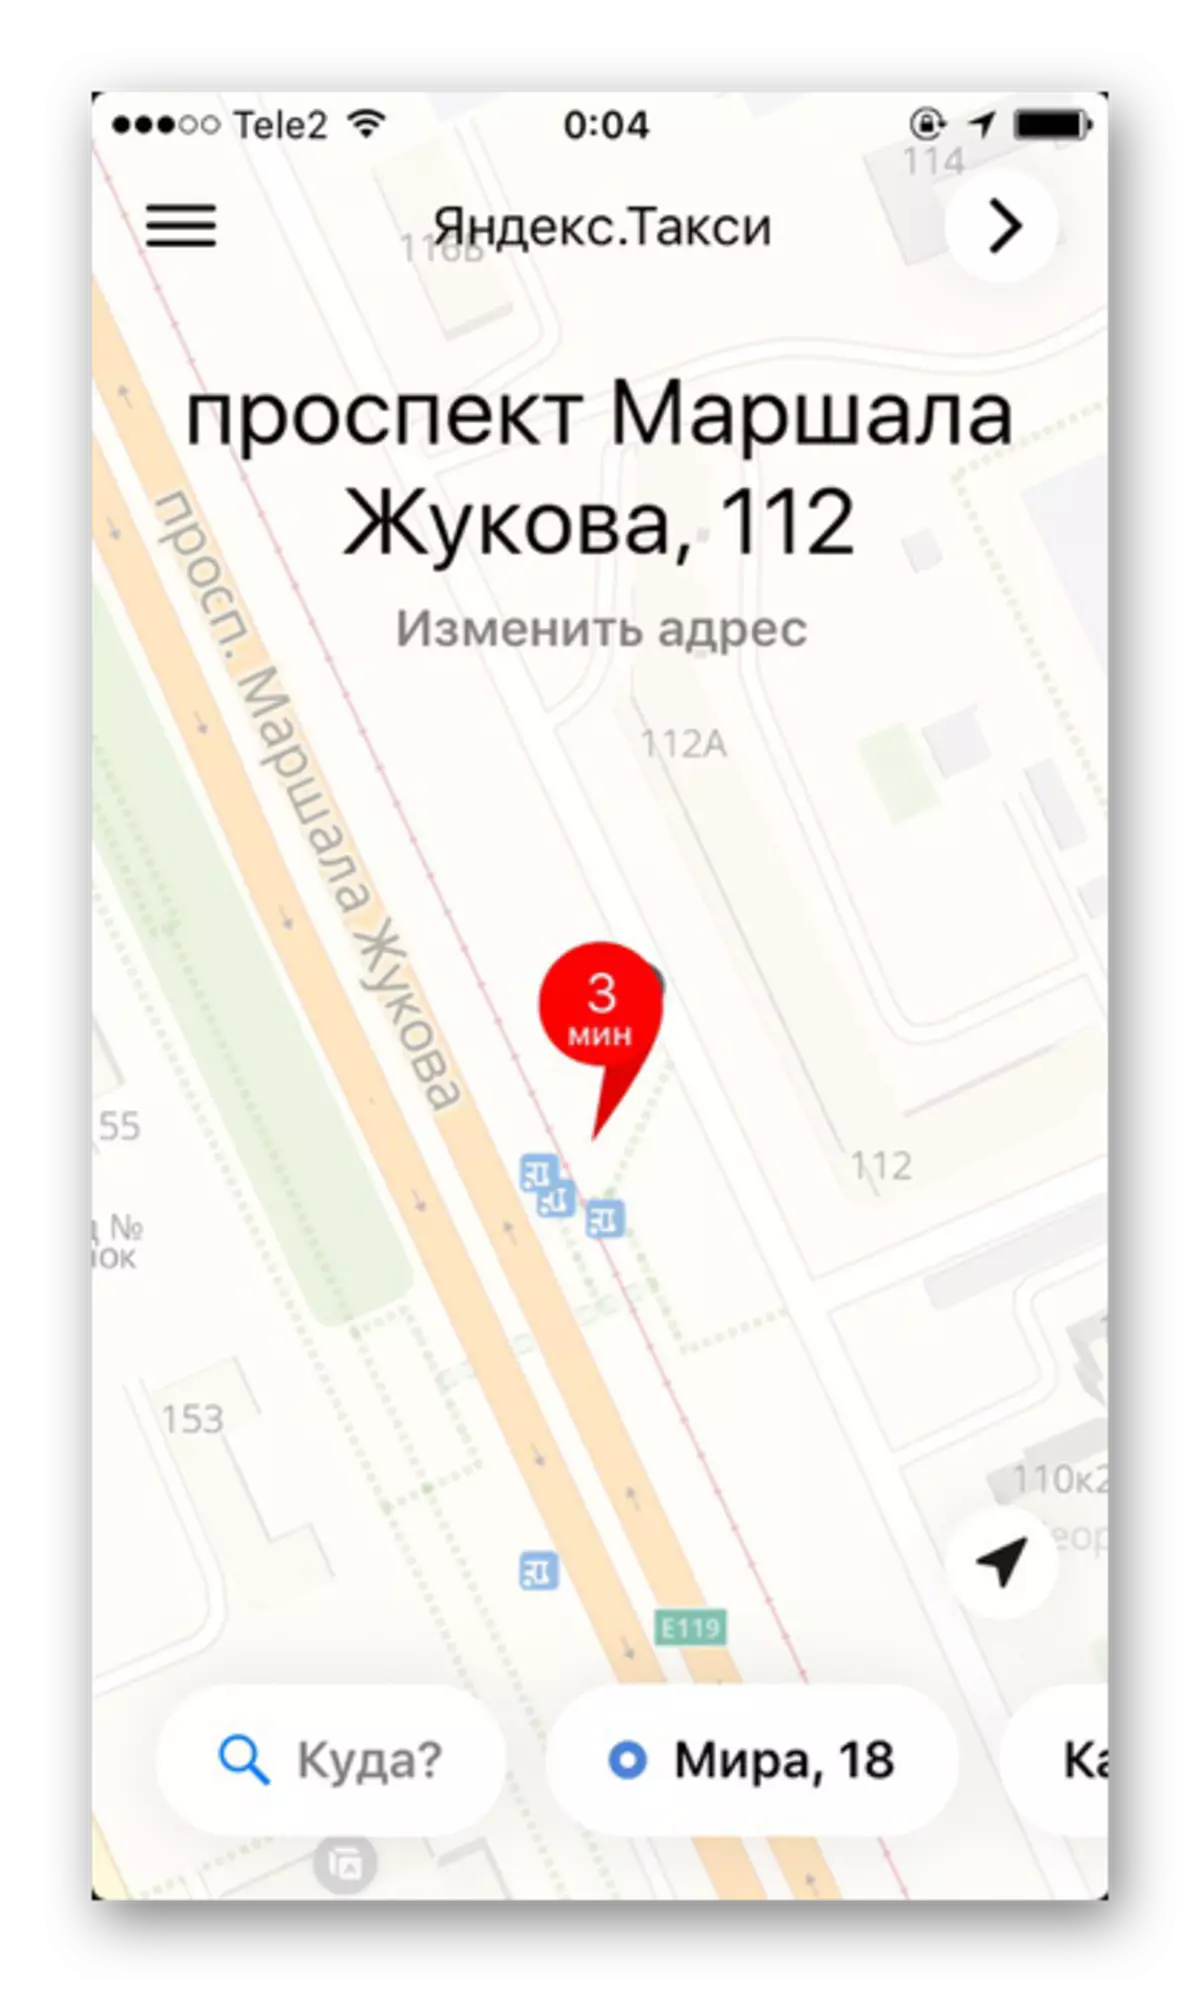 Piirkonna kaart, kus on üksikasjalik tänavate ja majade nimetus Yandex.taxi rakendus iPhone'is